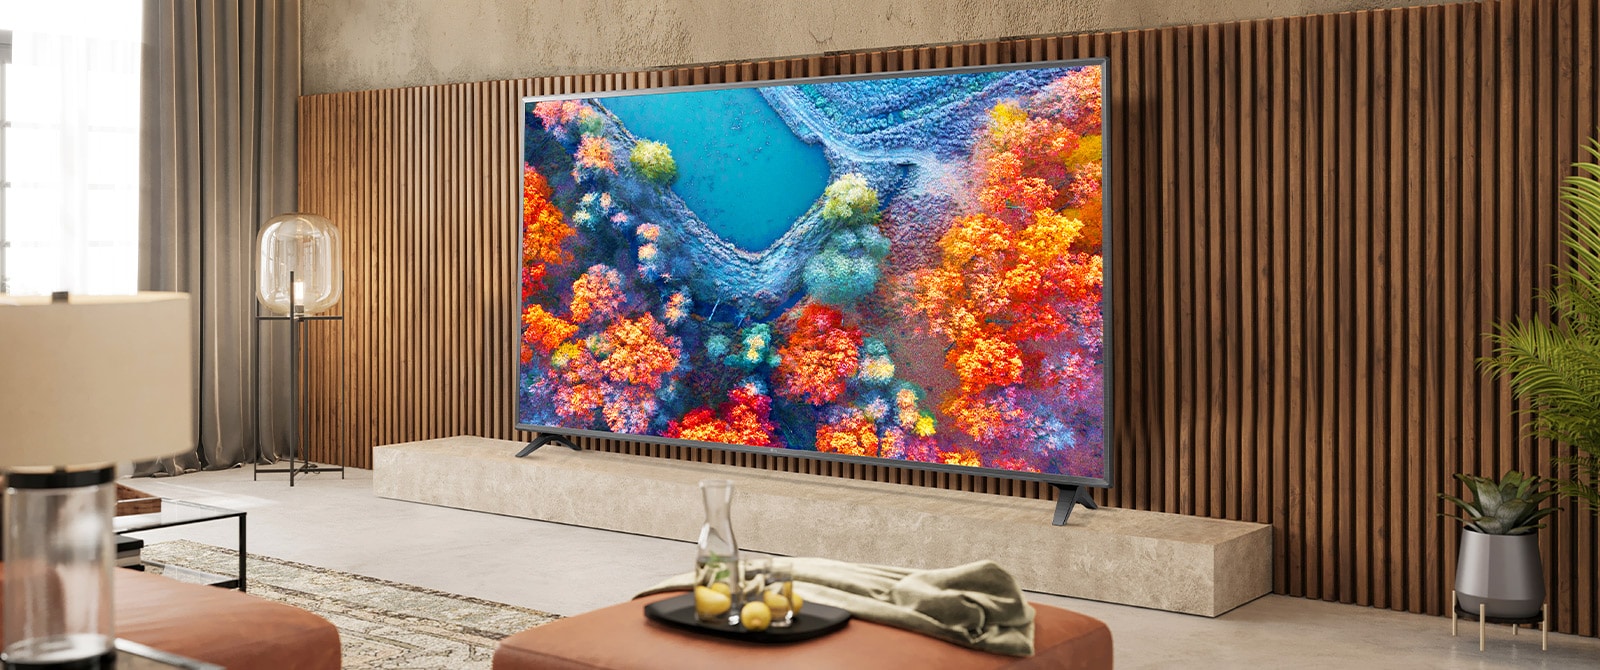 В гостиной установлен телевизор с тонкой рамкой, а яркий экран телевизора хорошо сочетается с интерьером.